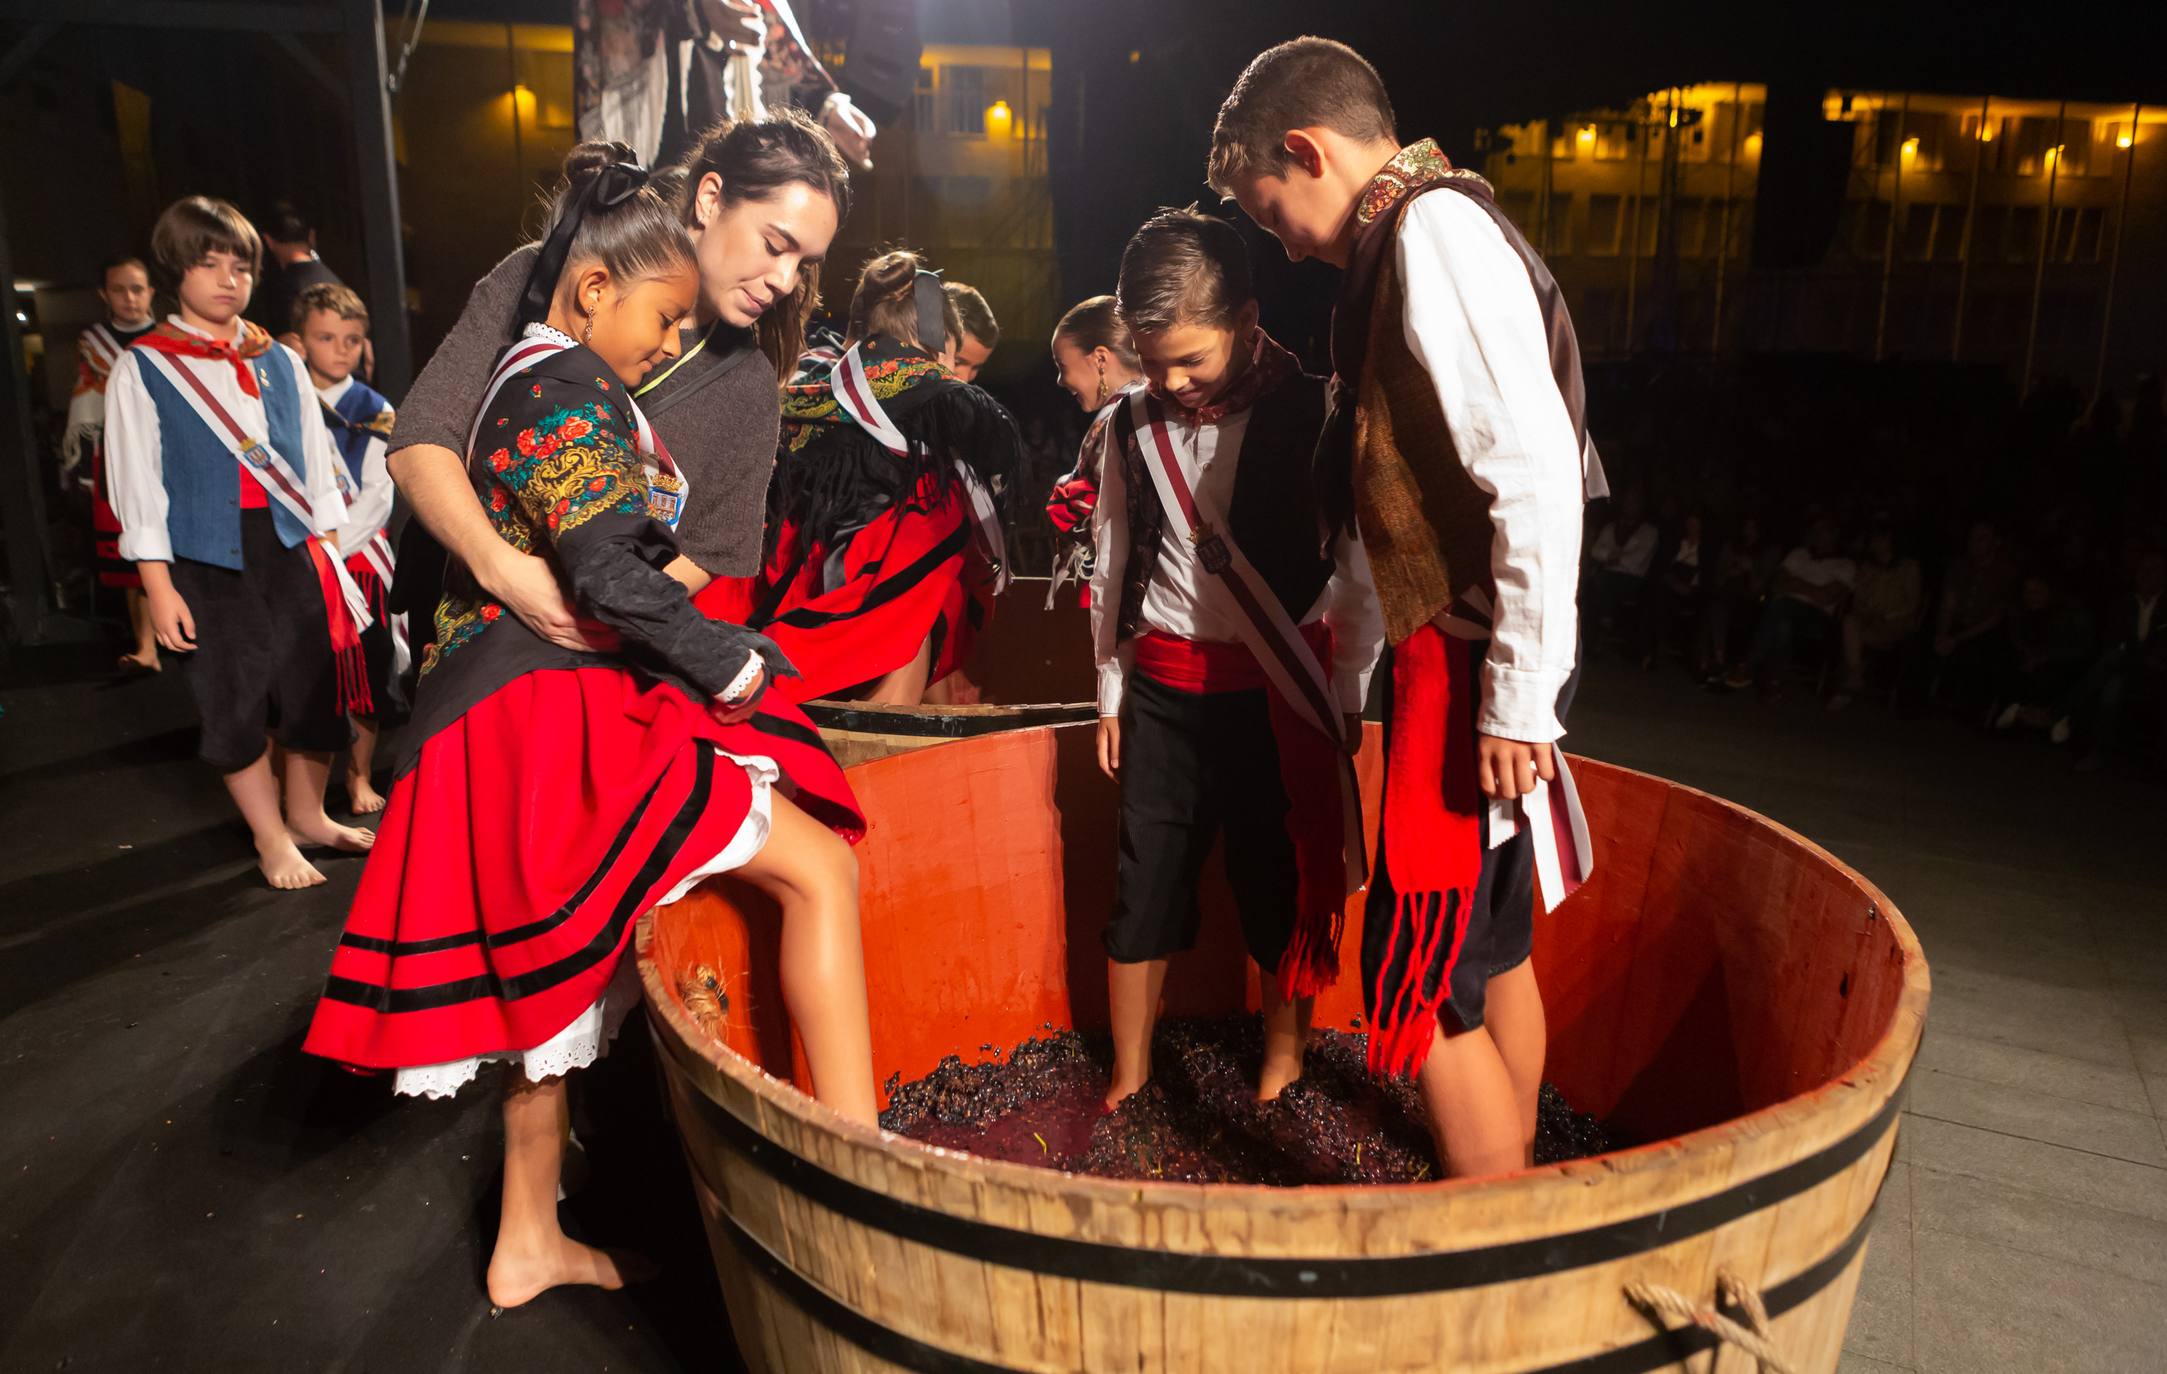 Los Voluntarios de Logroño fueron protagonistas de la edición de este año del pisado popular de uvas.